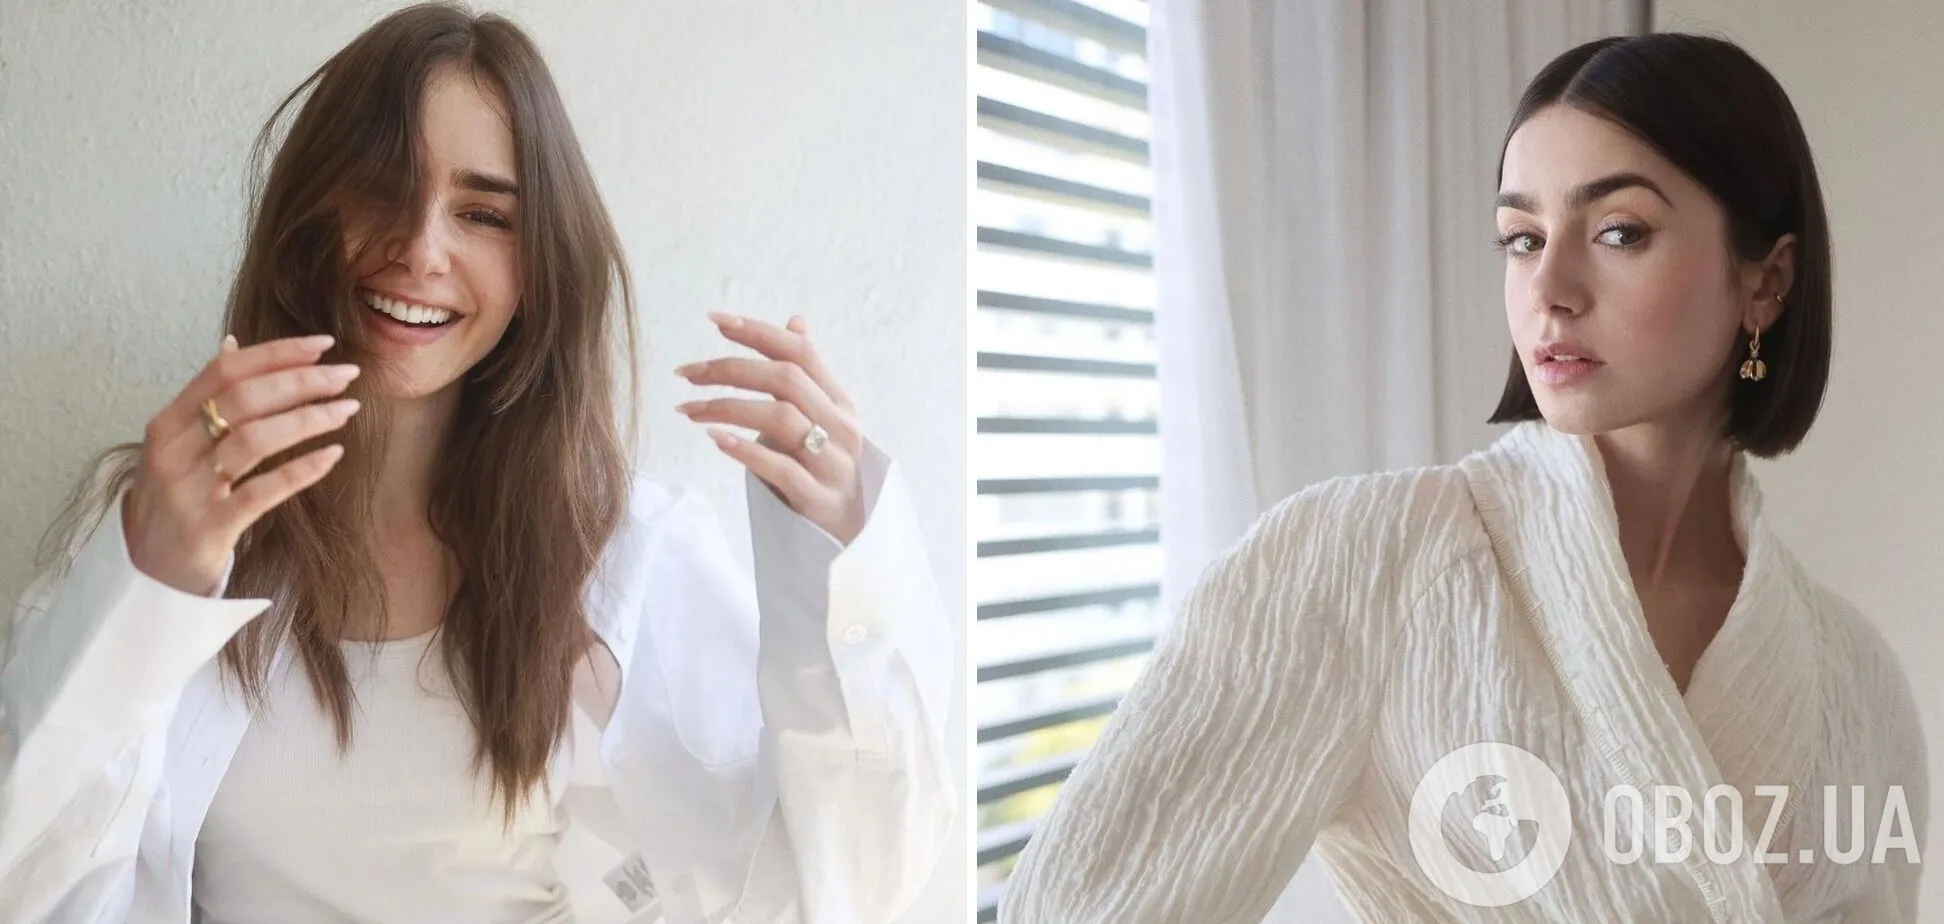 Зірка серіалу "Емілі в Парижі" Лілі Коллінз змінила довгі пасма на елегантний боб. Фото до і після